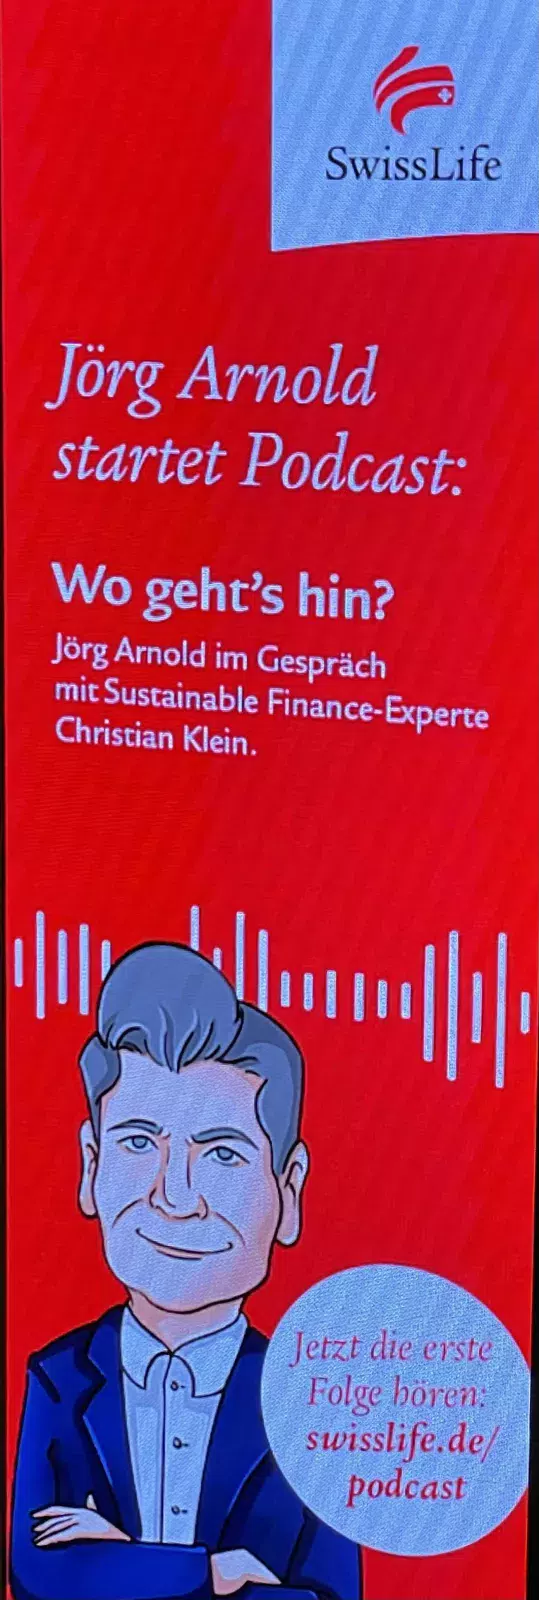 Roter Swiss Life Videoaufsteller mit Ankündigung vom Podcast von Jörg Arnold.